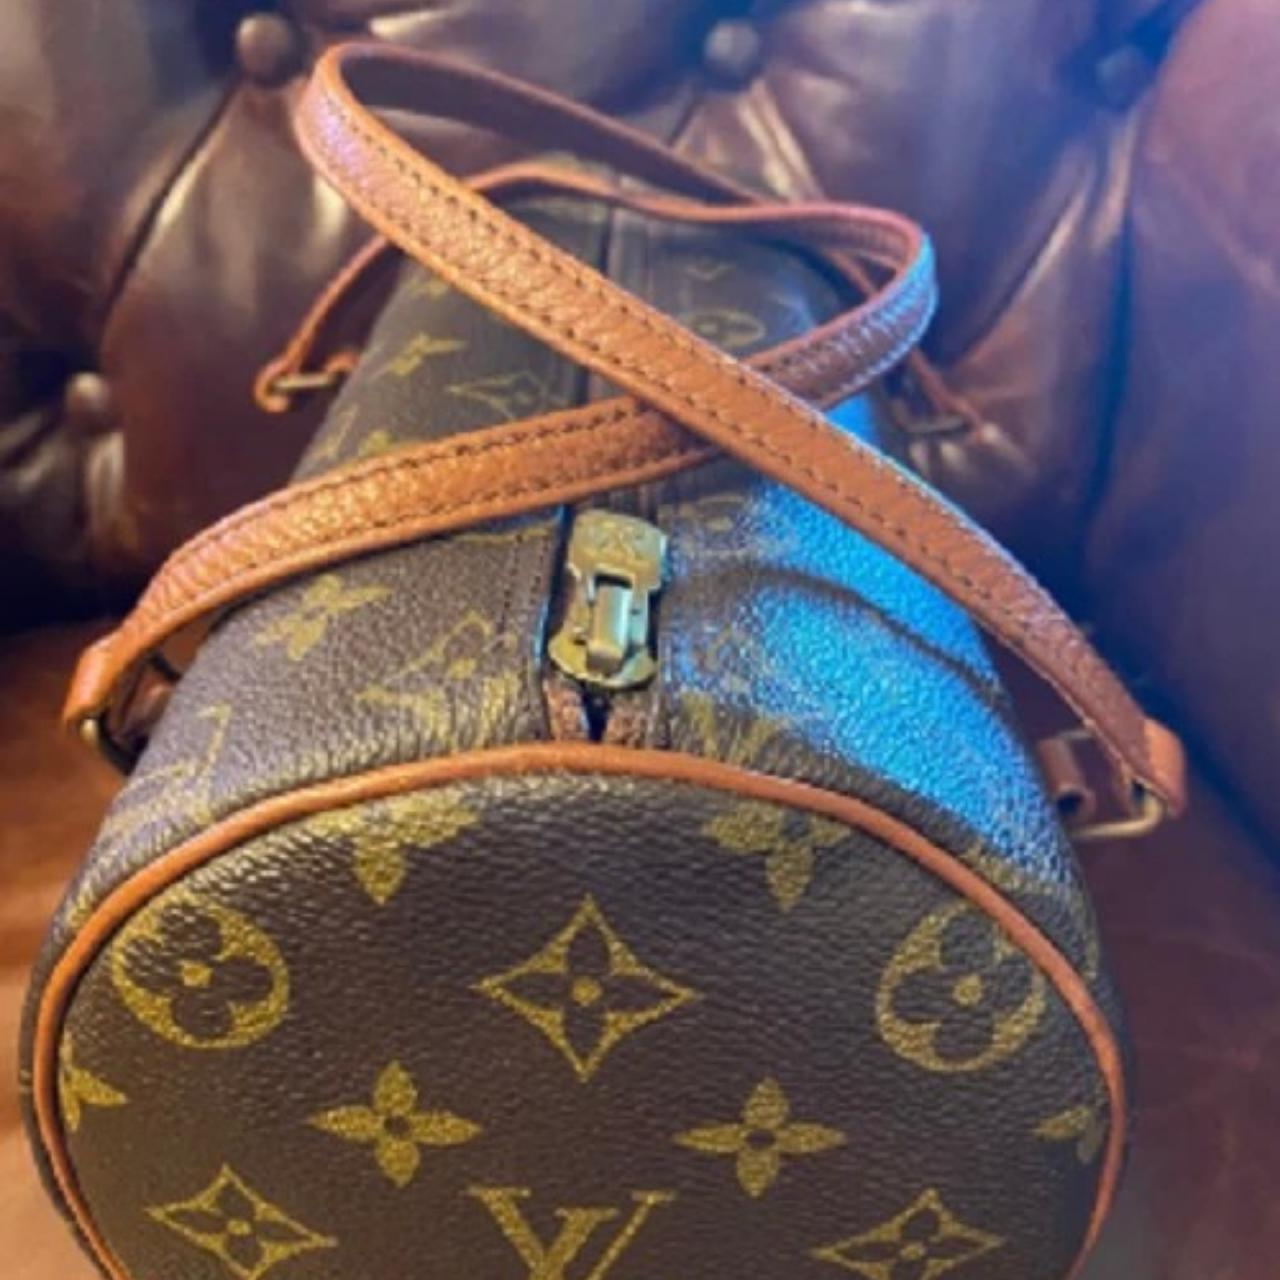 Louis Vuitton Bag Authentic pre-loved vintage LV - Depop